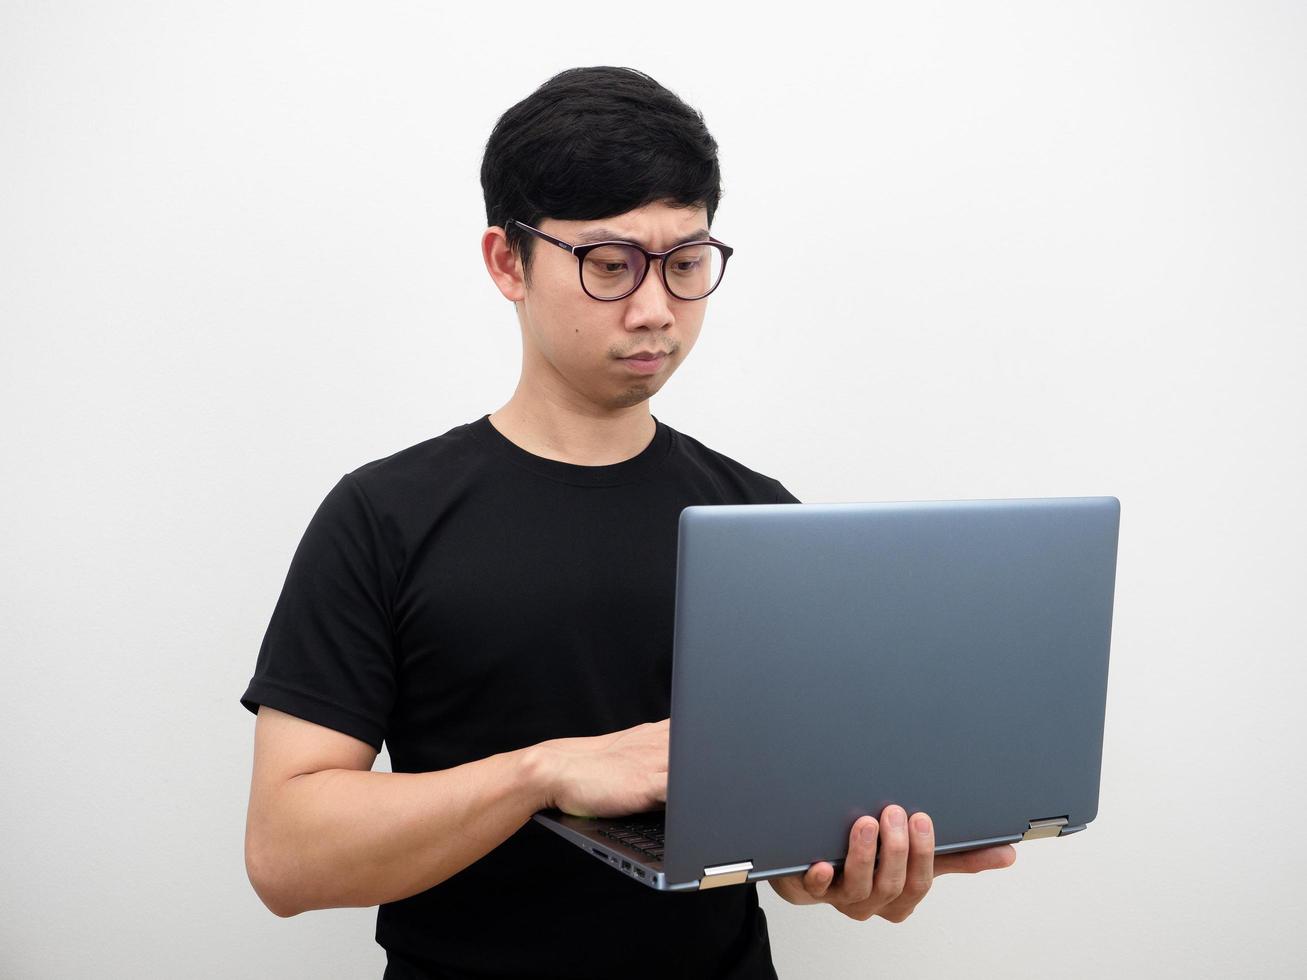 hombre asiático con gafas usando una computadora portátil en la mano cara seria sobre fondo blanco foto